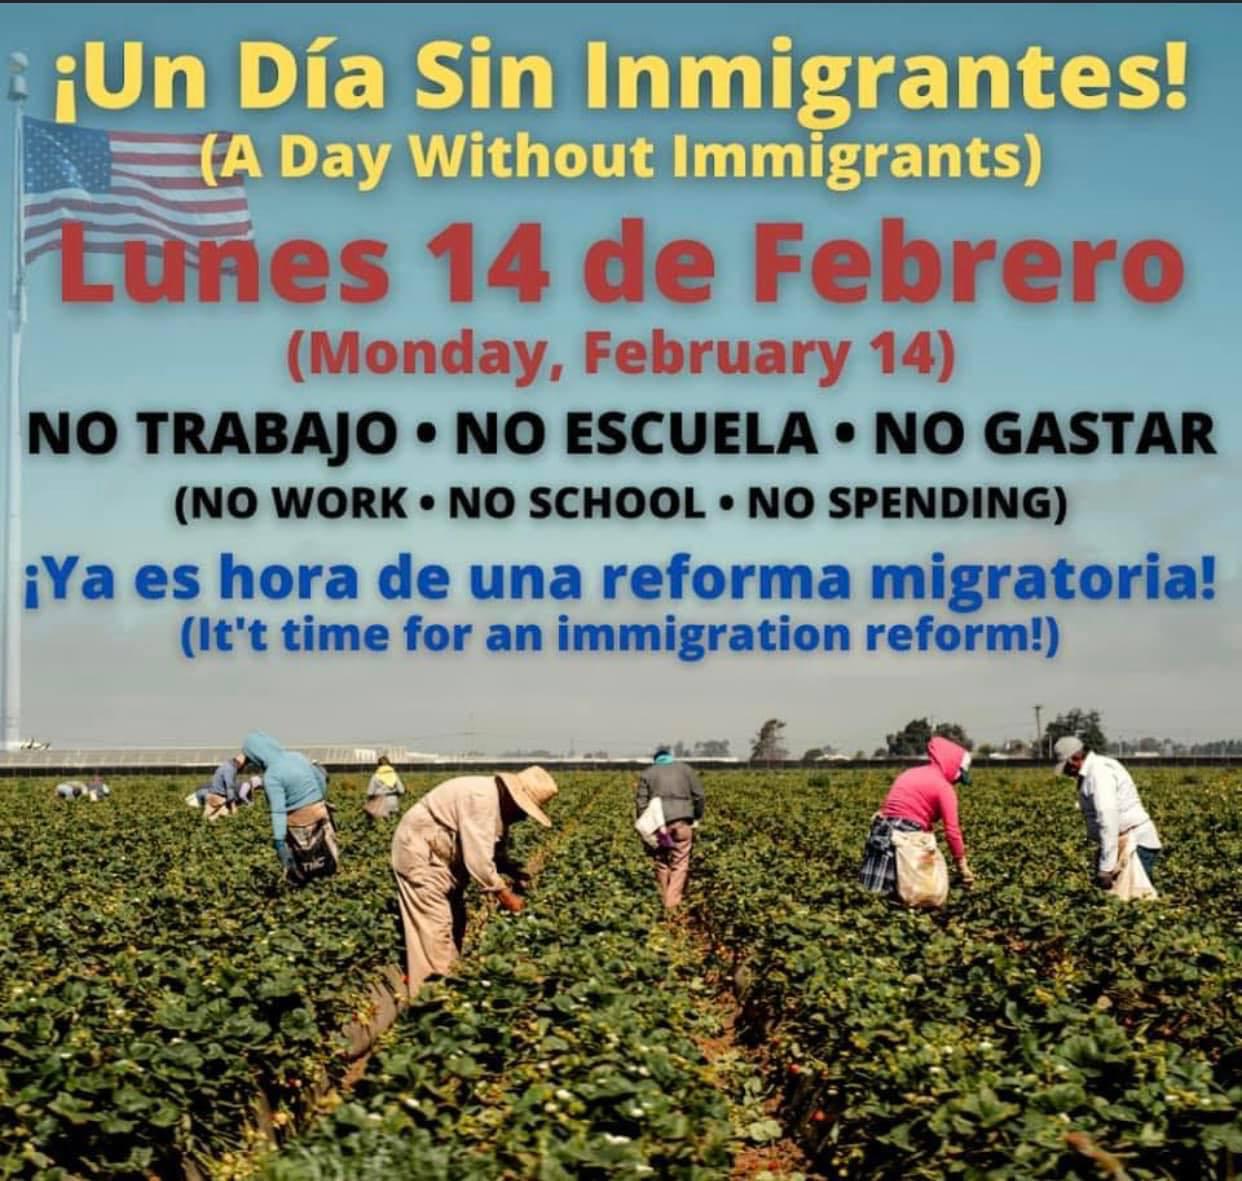 Miles de indocumentados se han sumado a la iniciativa de un día sin inmigrantes para el próximo 14 de febrero.